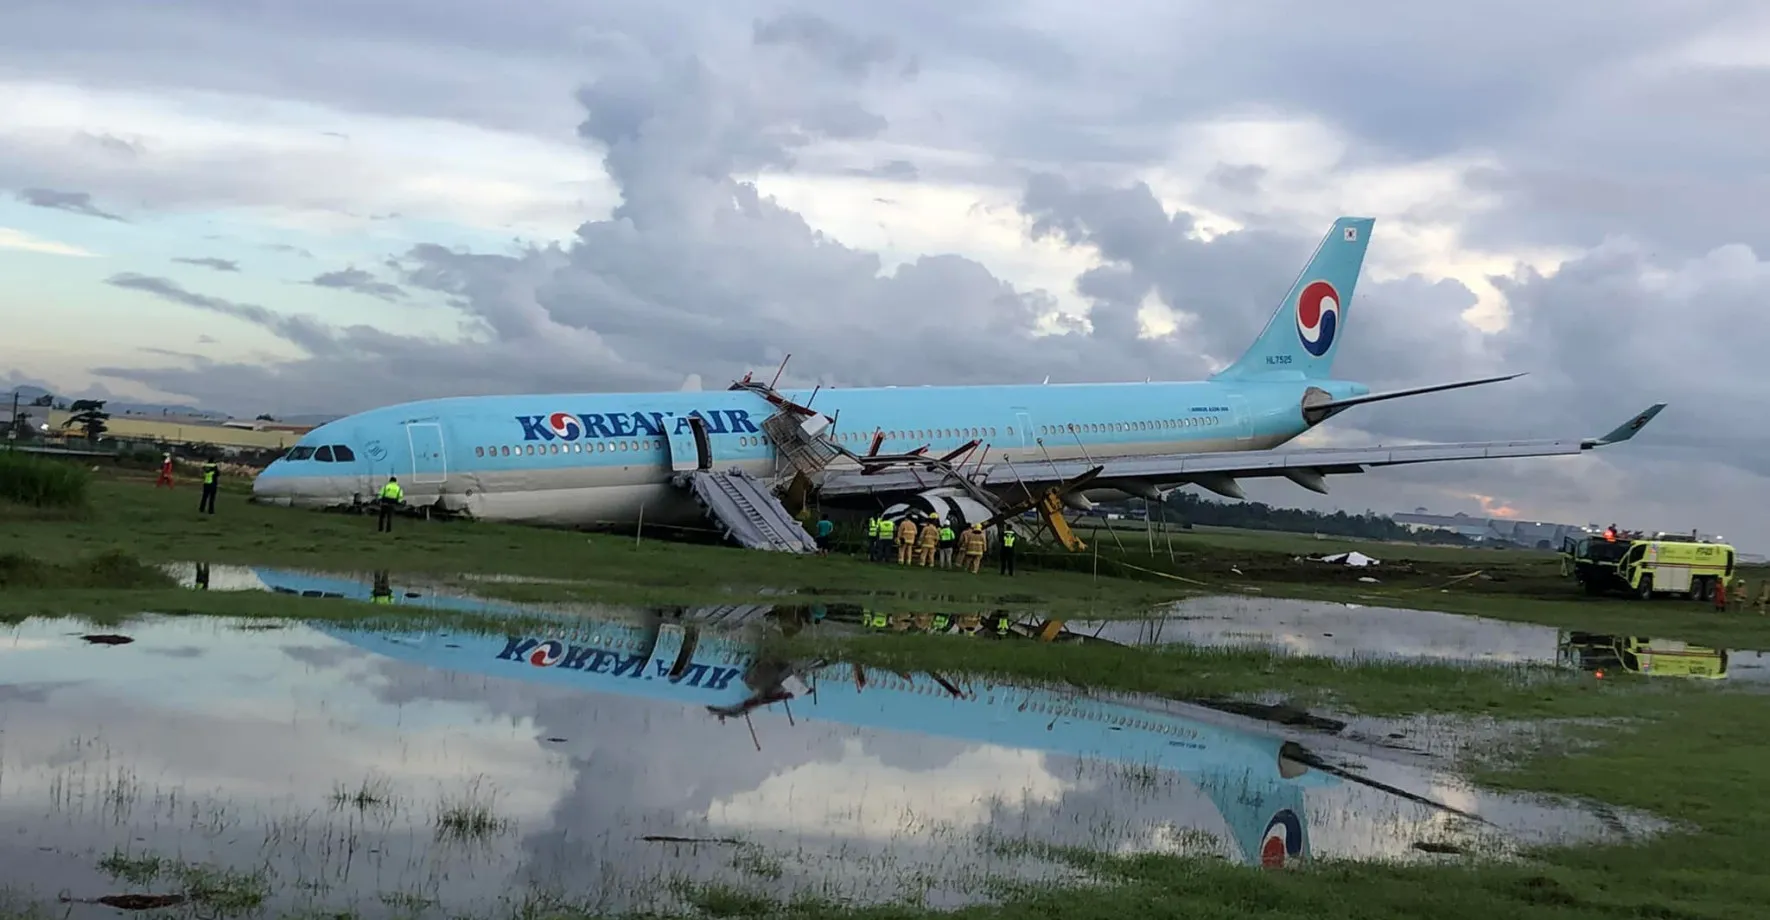 Letadlo Korean Air sjelo při přistávání z ranveje. Přední část je zcela zničená